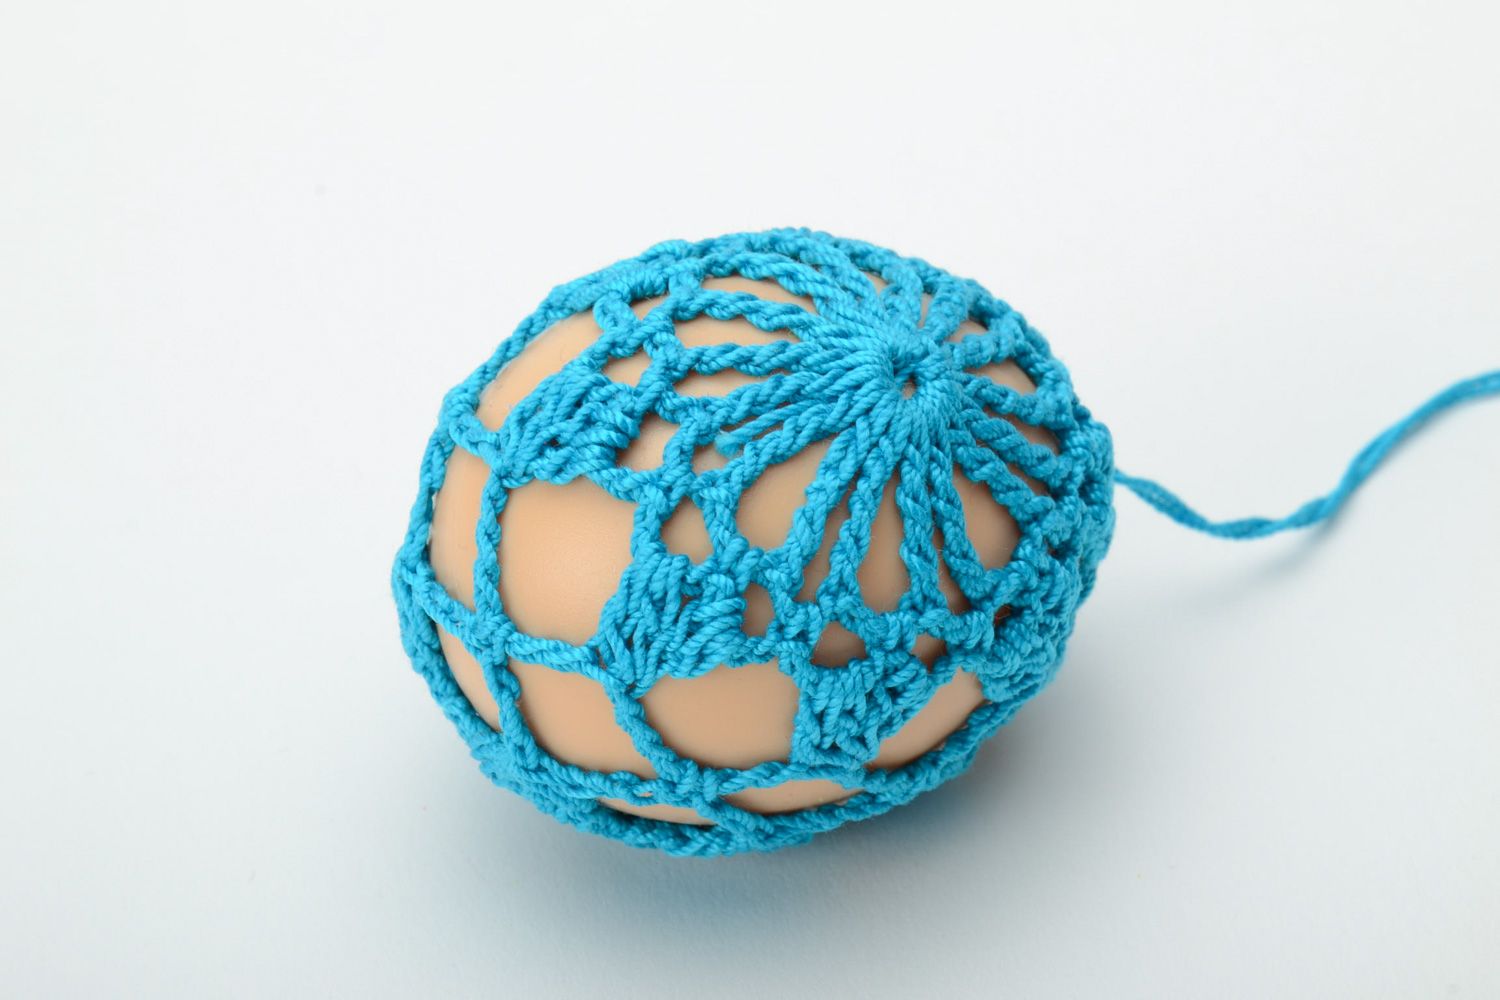 Пасхальное яйцо оплетенное нитками из хлопка голубое фото 2